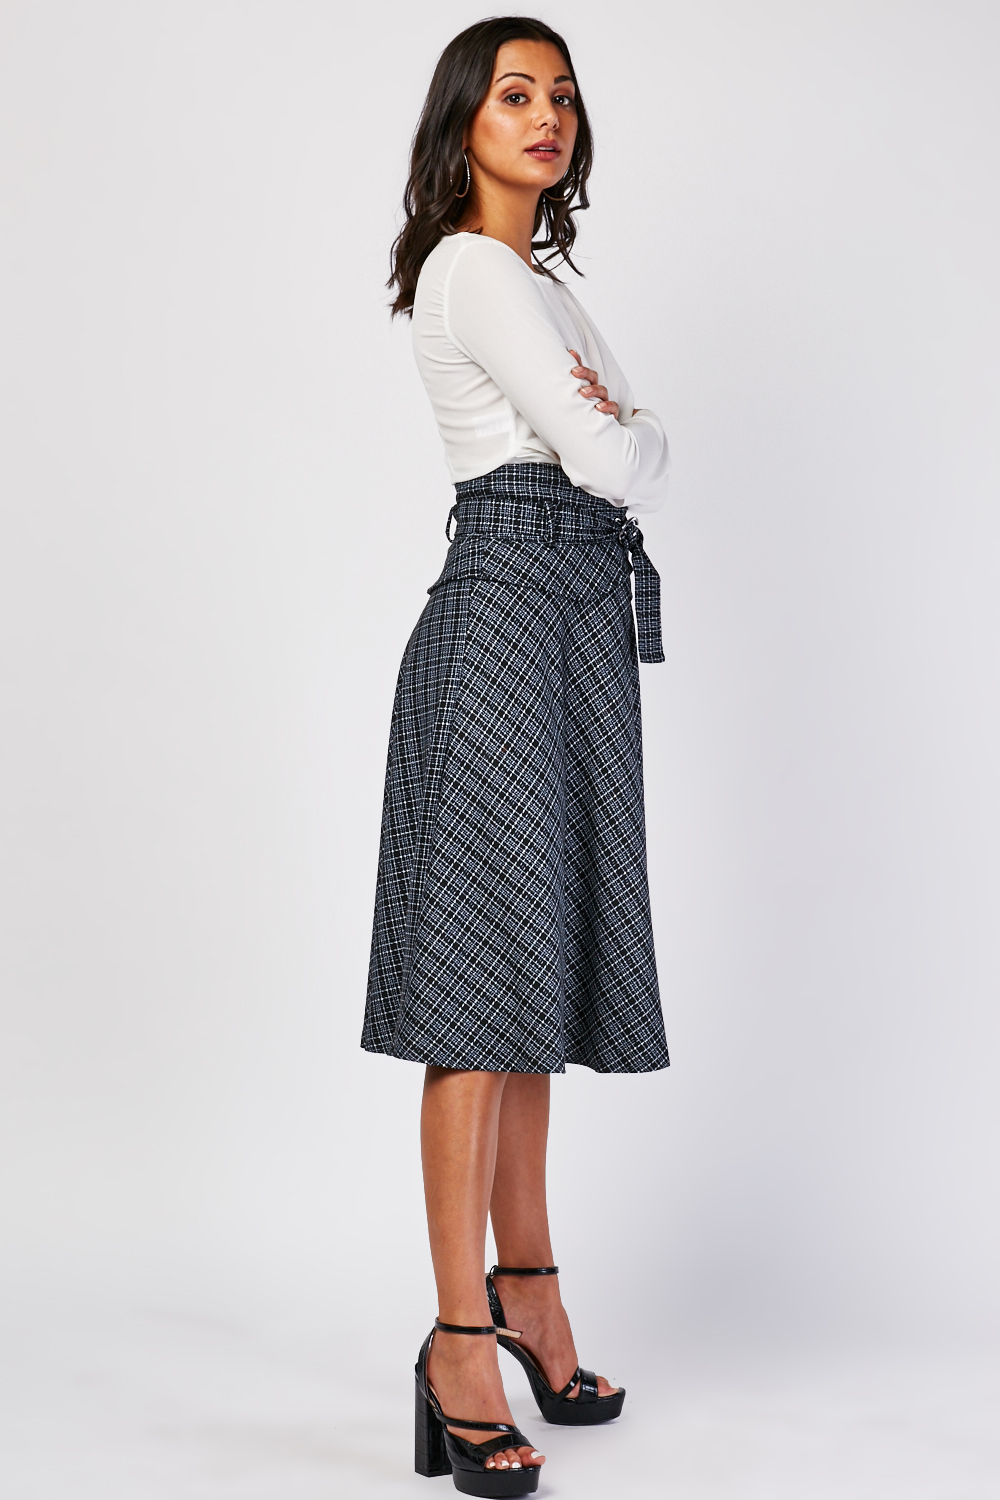 High Waist Flared Peplum Skirt - Just $7